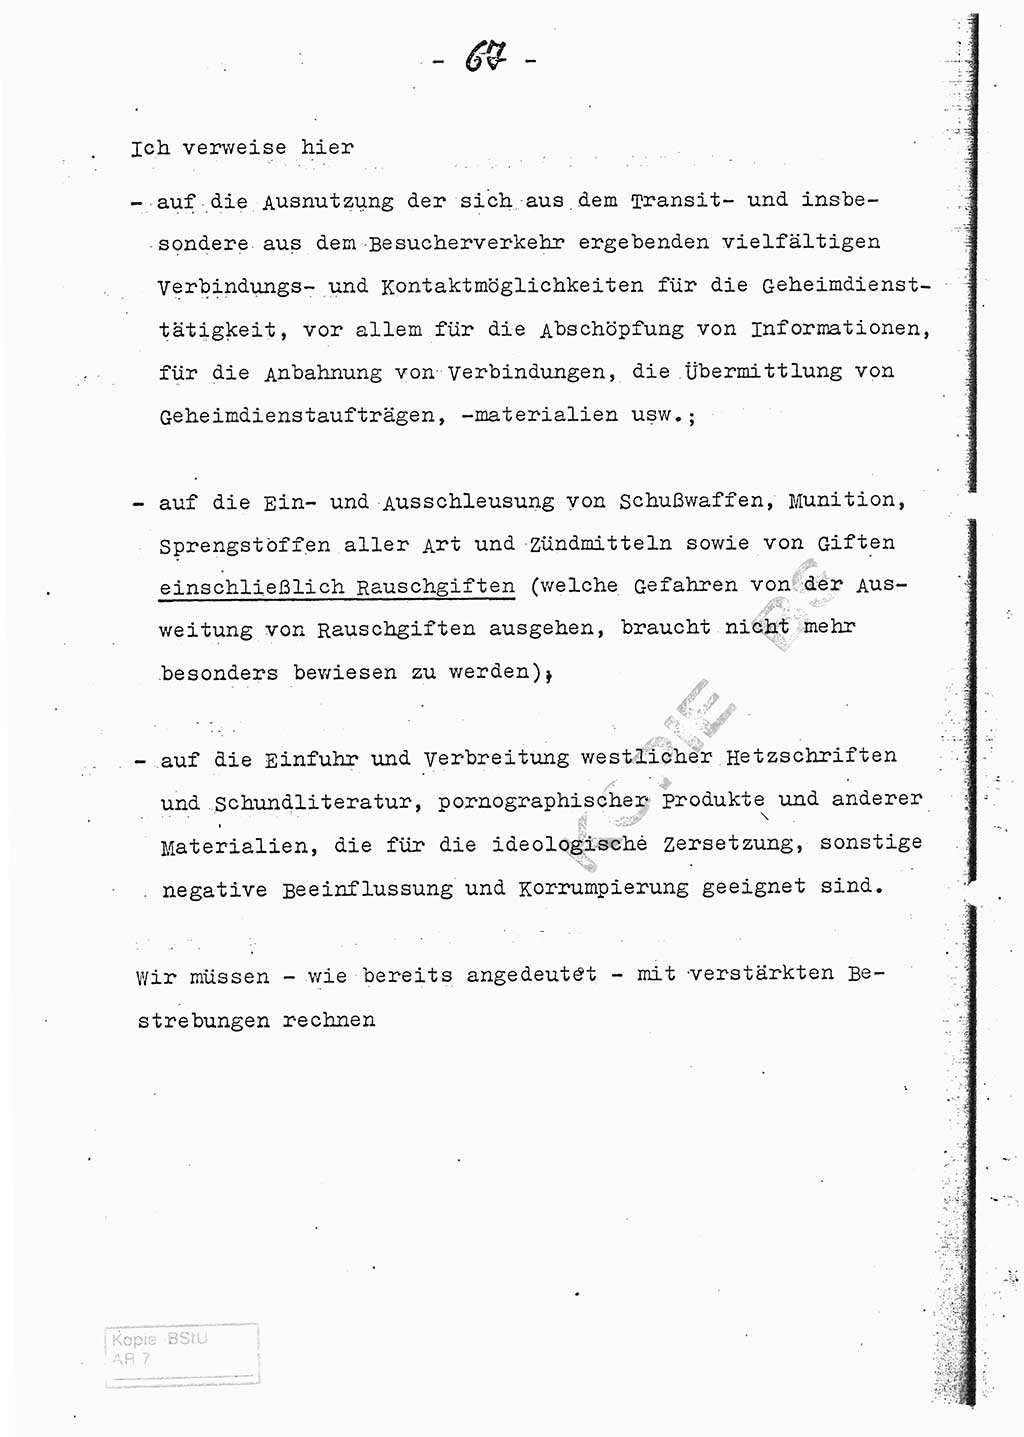 Referat (Entwurf) des Genossen Minister (Generaloberst Erich Mielke) auf der Dienstkonferenz 1972, Ministerium für Staatssicherheit (MfS) [Deutsche Demokratische Republik (DDR)], Der Minister, Geheime Verschlußsache (GVS) 008-150/72, Berlin 25.2.1972, Seite 67 (Ref. Entw. DK MfS DDR Min. GVS 008-150/72 1972, S. 67)